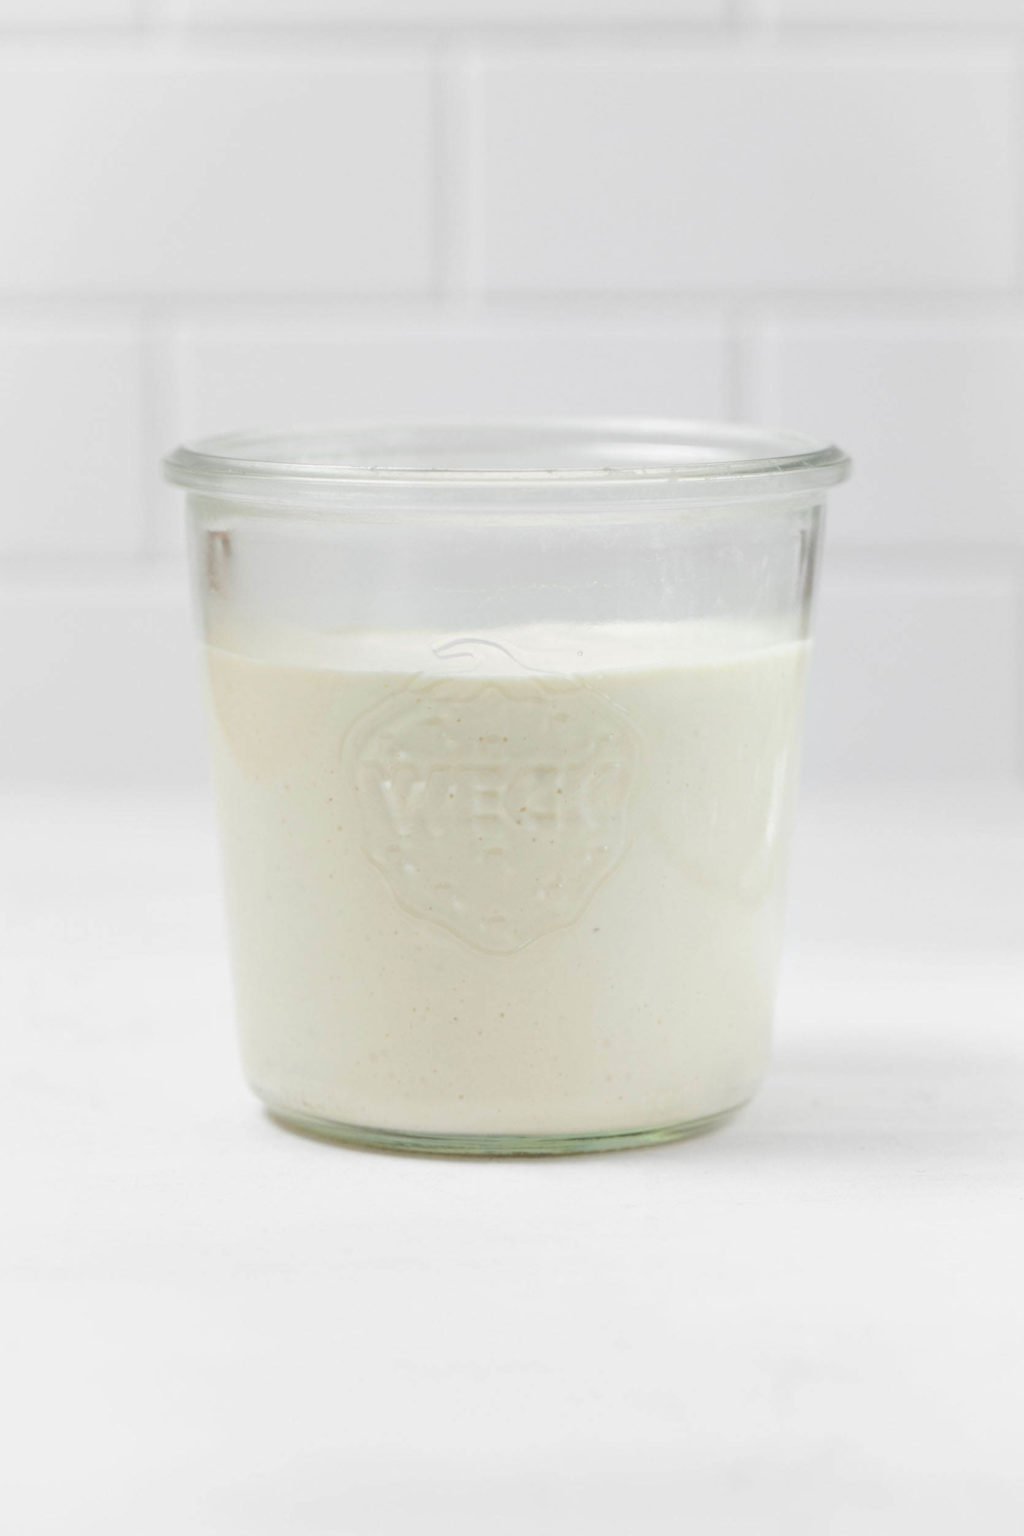 Ein Tischlerglas aus Glas enthält cremeweiße vegane Sauerrahm.  Es liegt auf einer weißen Fläche.